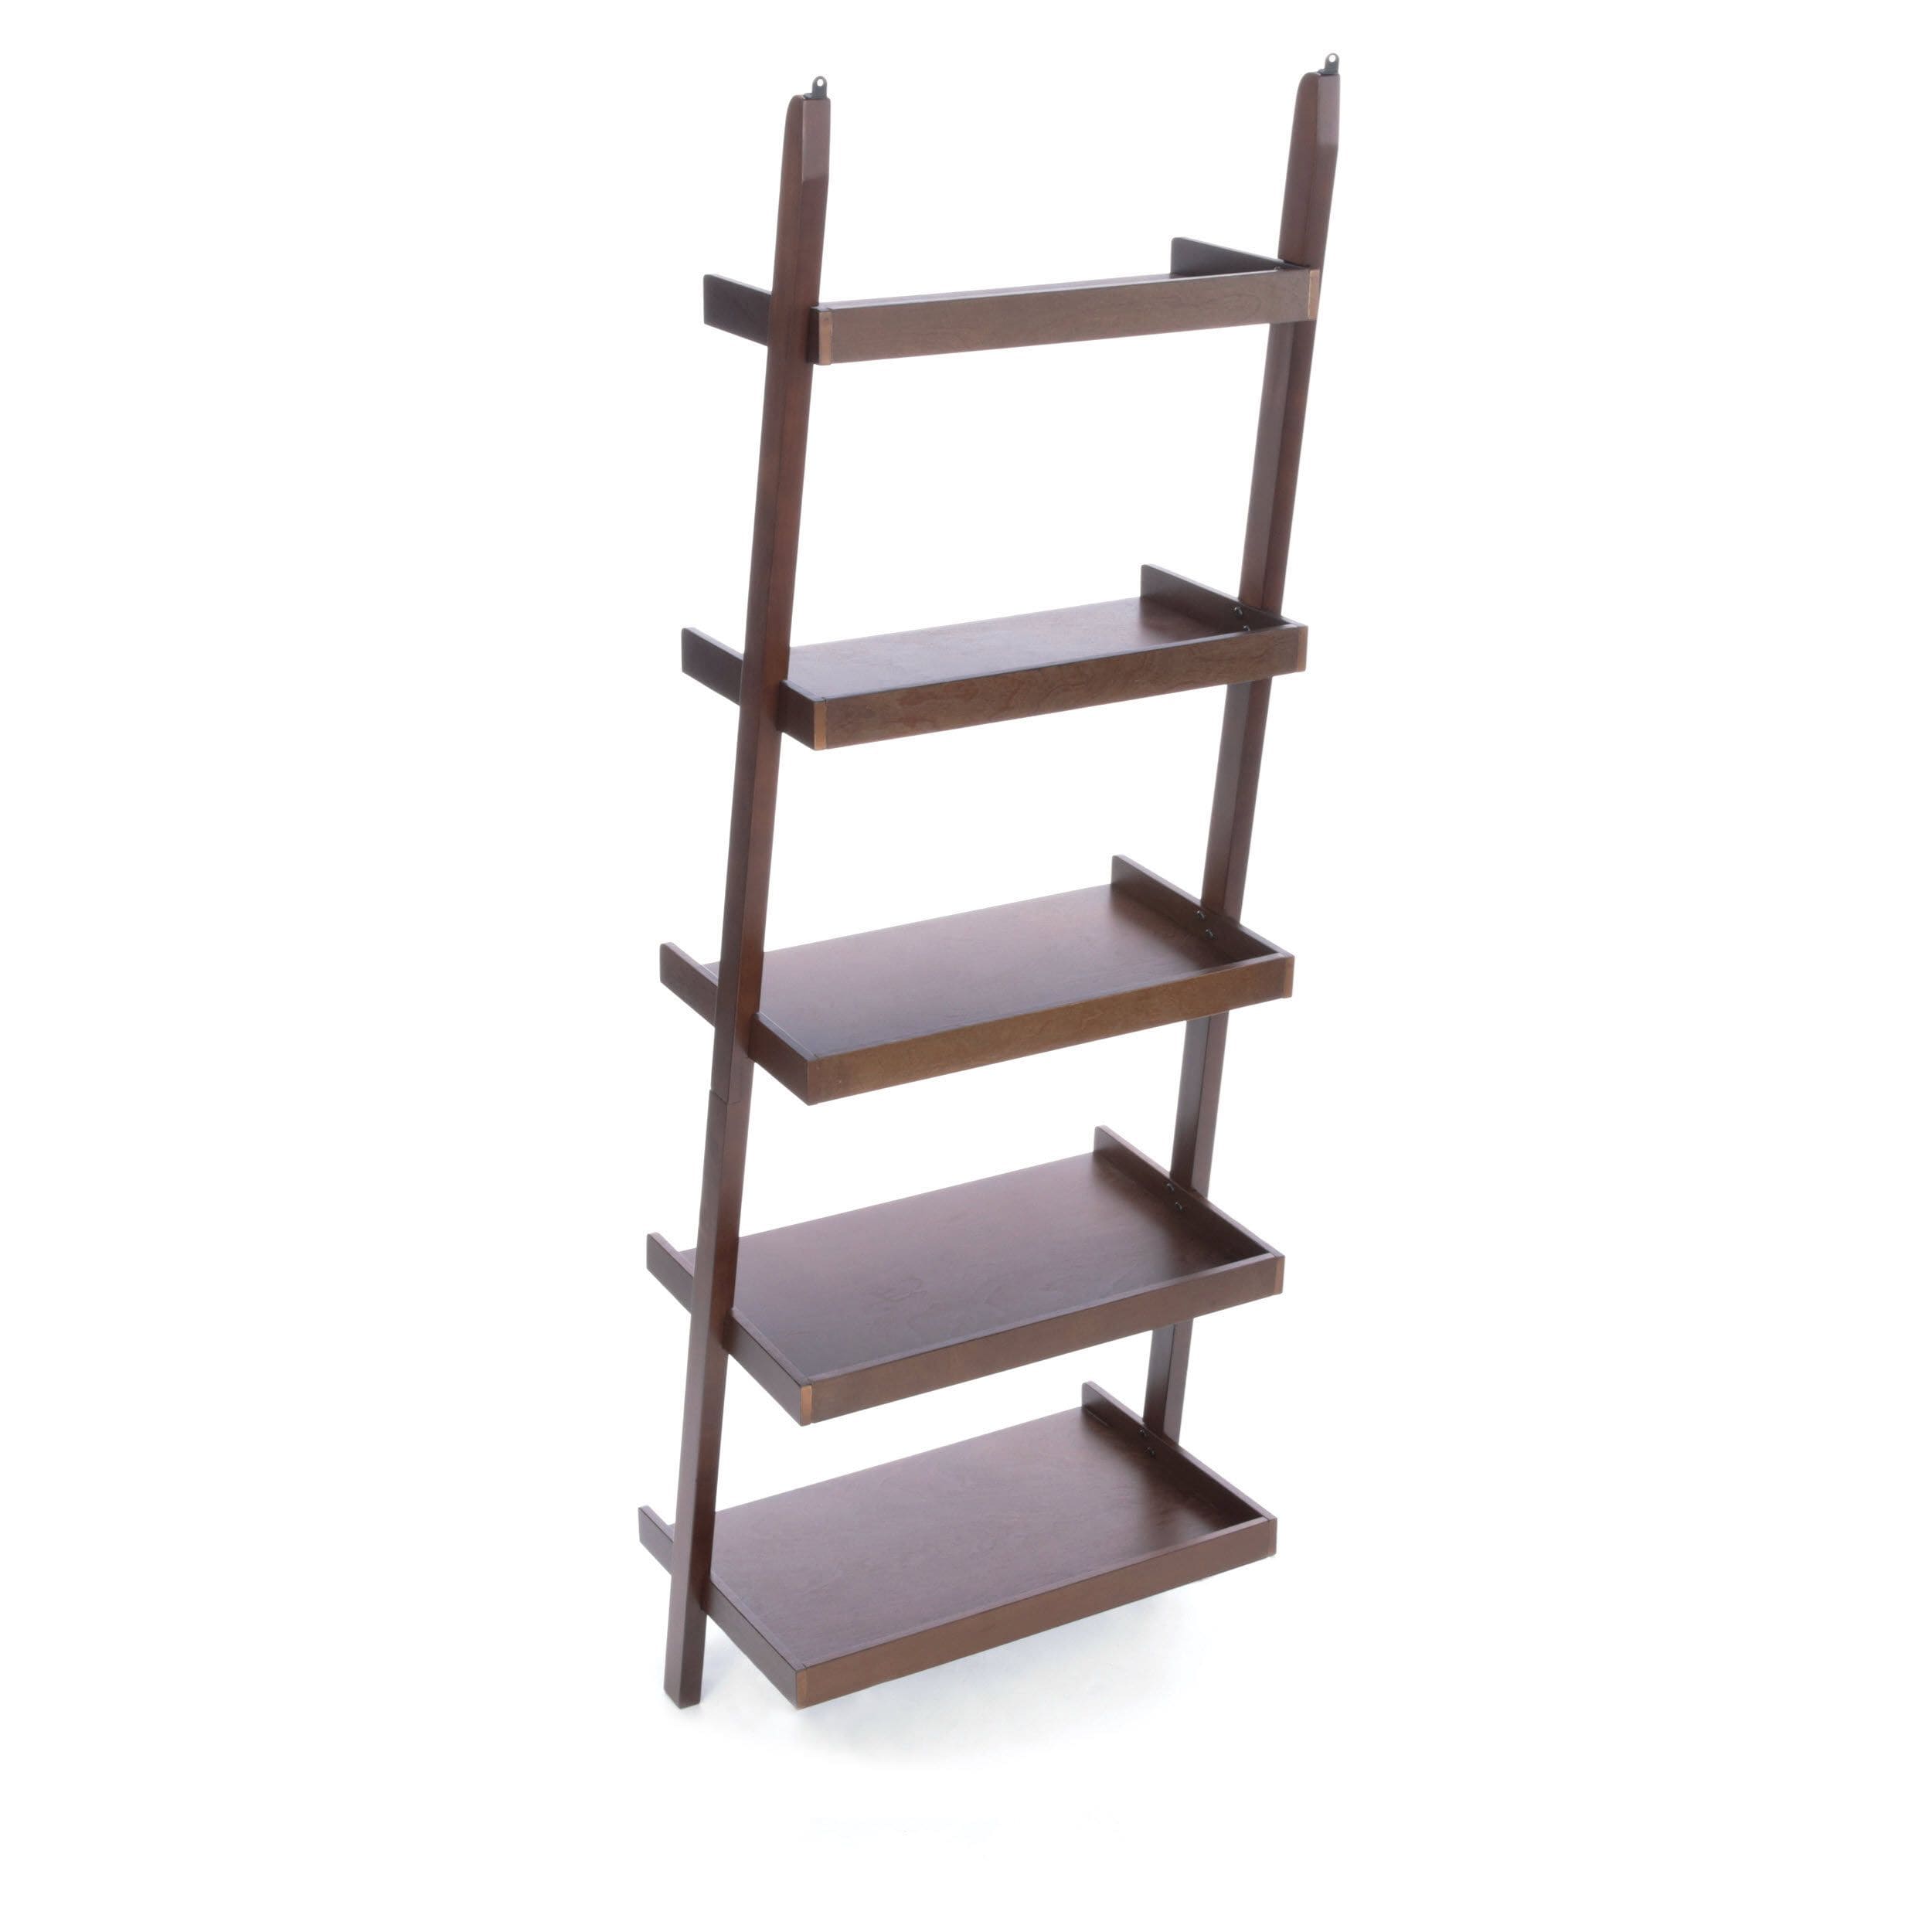 Roth Java Wood 5 Shelf Ladder Bookcase, Allen Roth White Wood 5 Shelf Ladder Bookcase